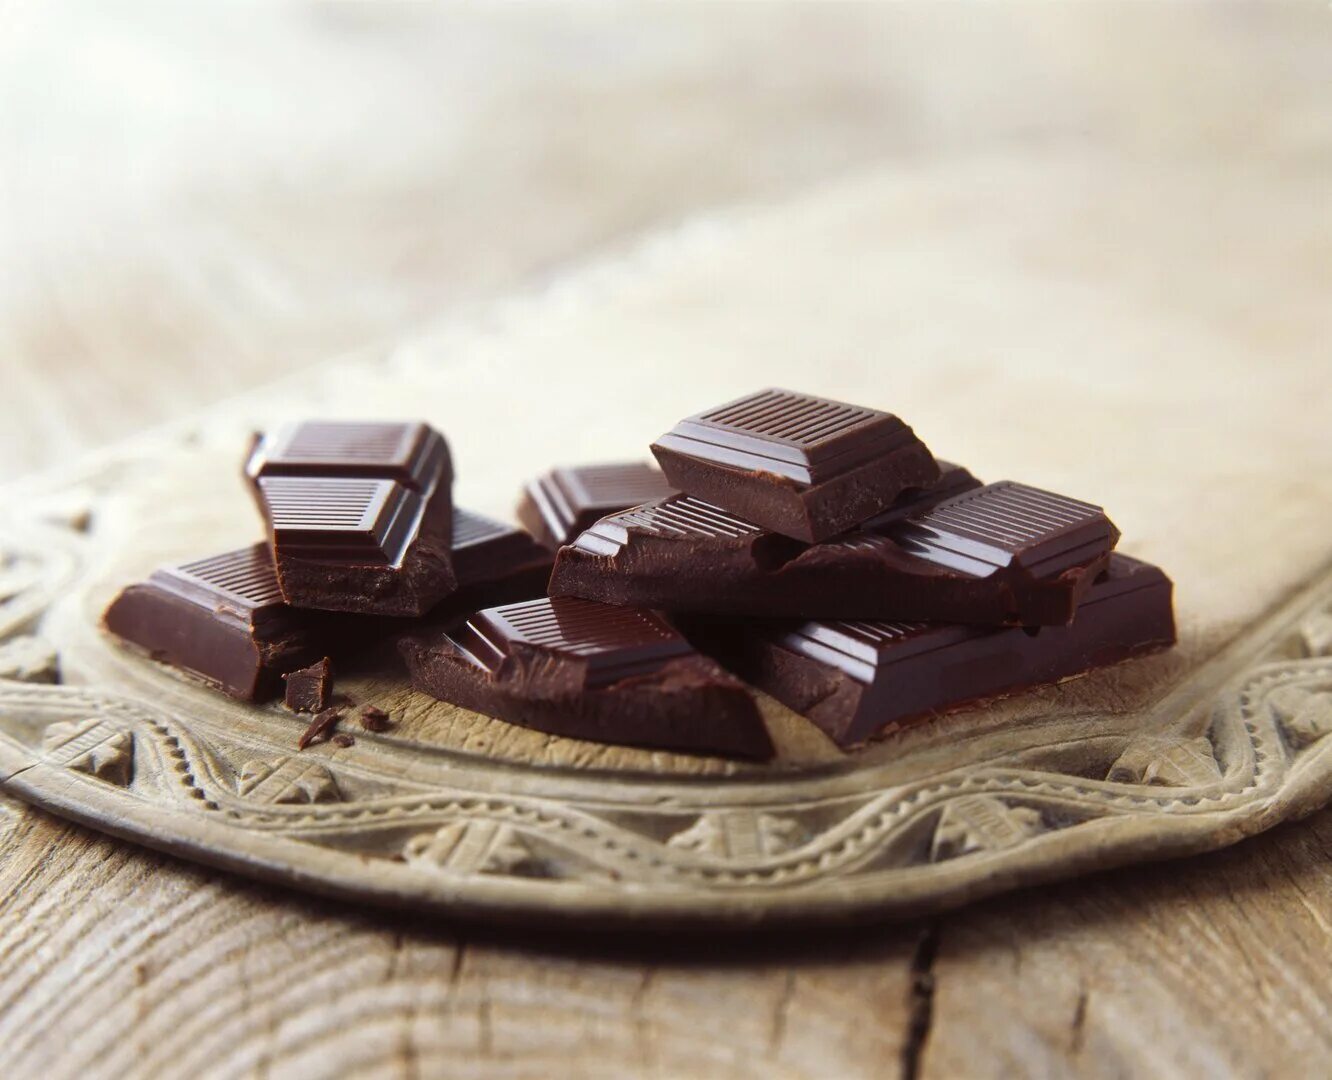 Шоколад вещества. Шоколад. Темный шоколад. Шоколад Горький. Темный шоколад и Горький шоколад.